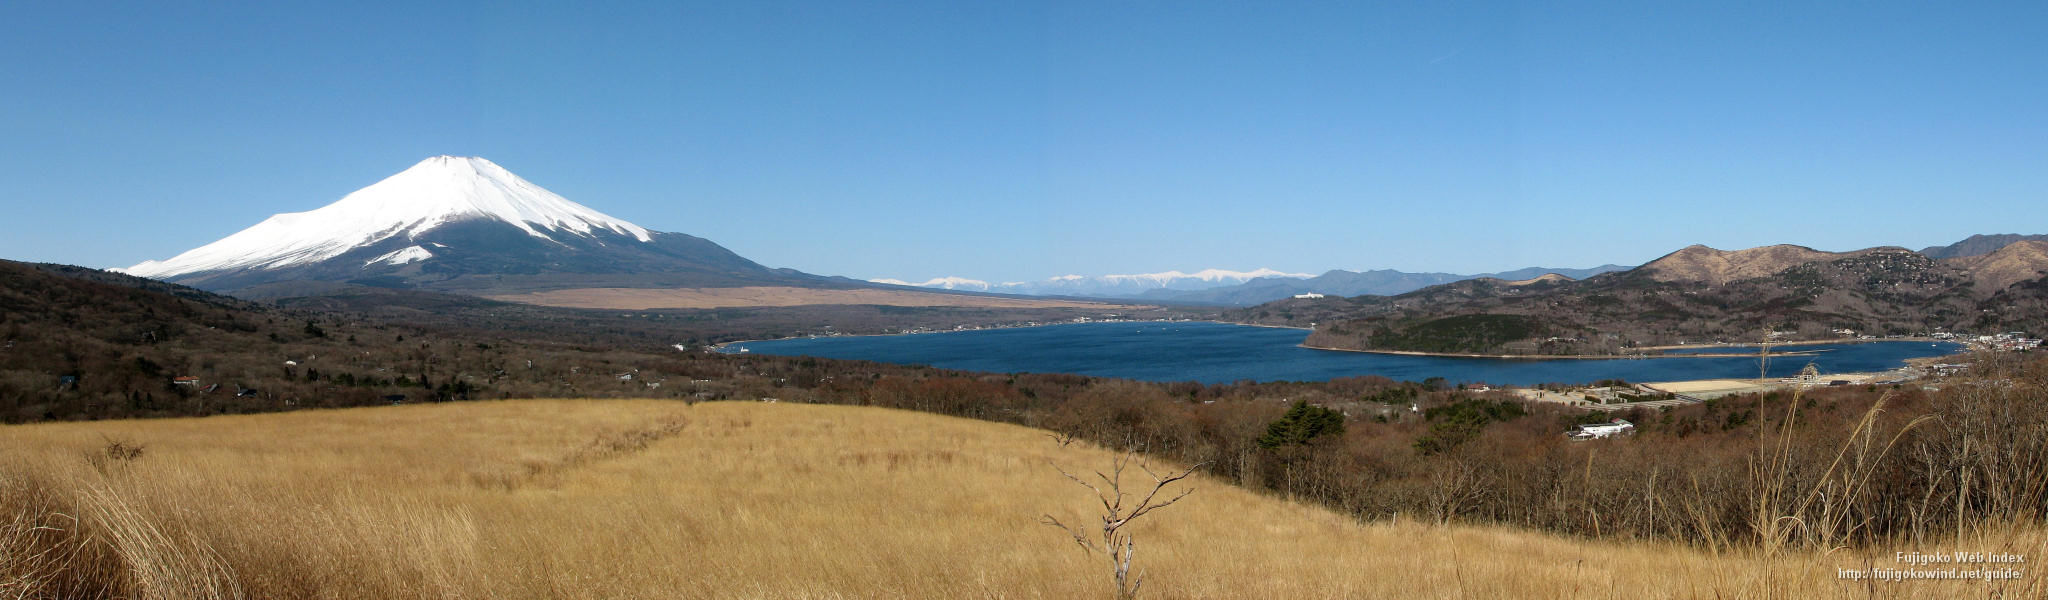 富士五湖webインデックス 壁紙 ちゃりblog パノラマ台からパノラマ写真